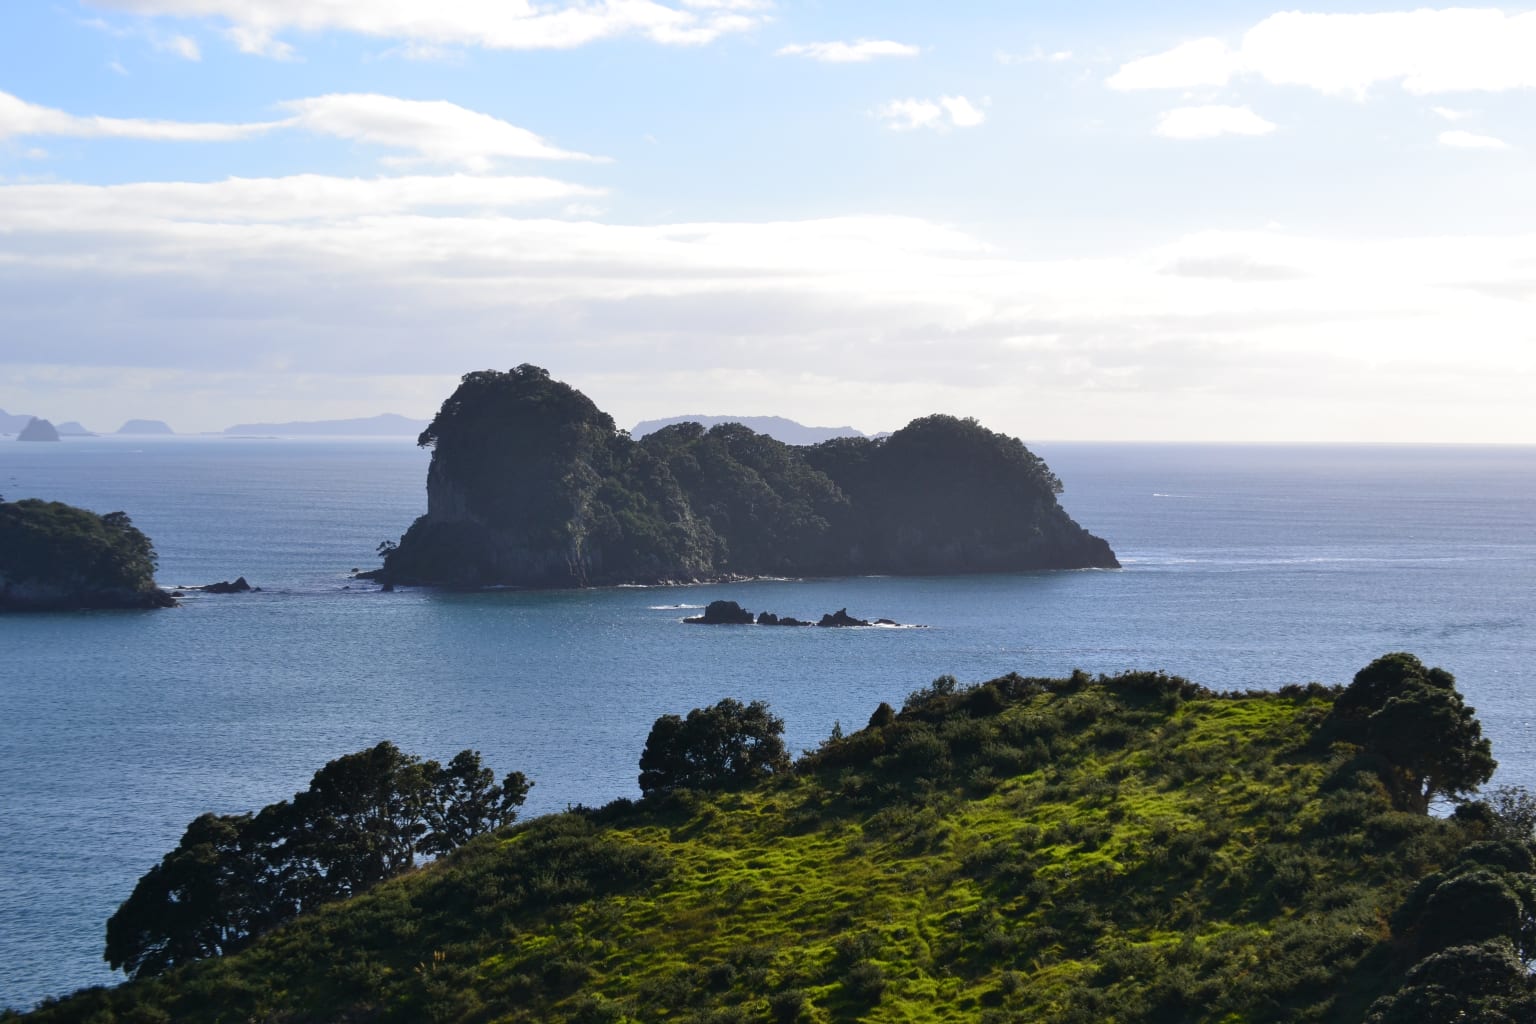 Seaside cliffs in New Zealand.